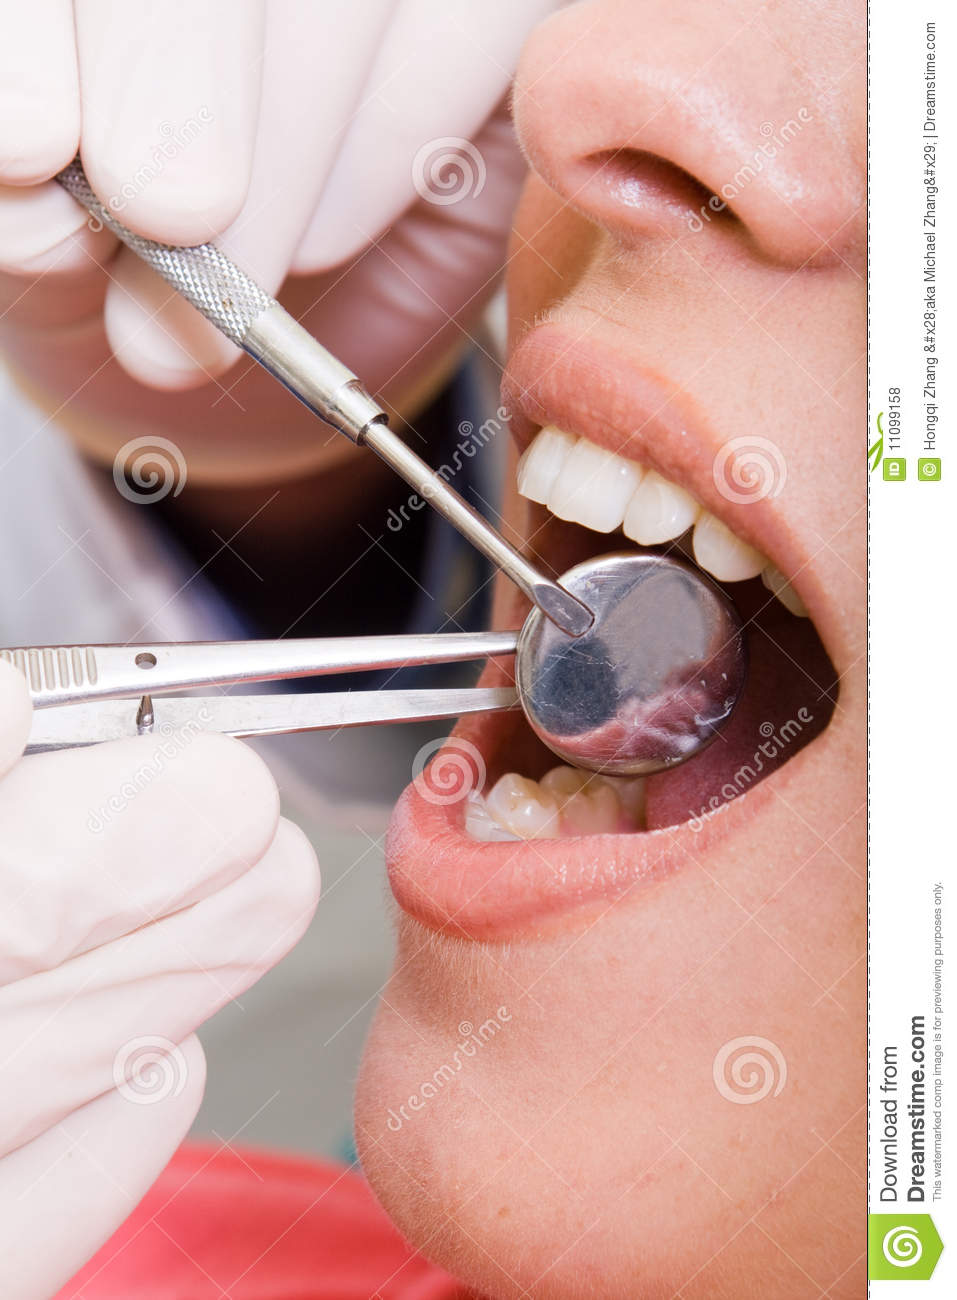 Free Dental Check Up